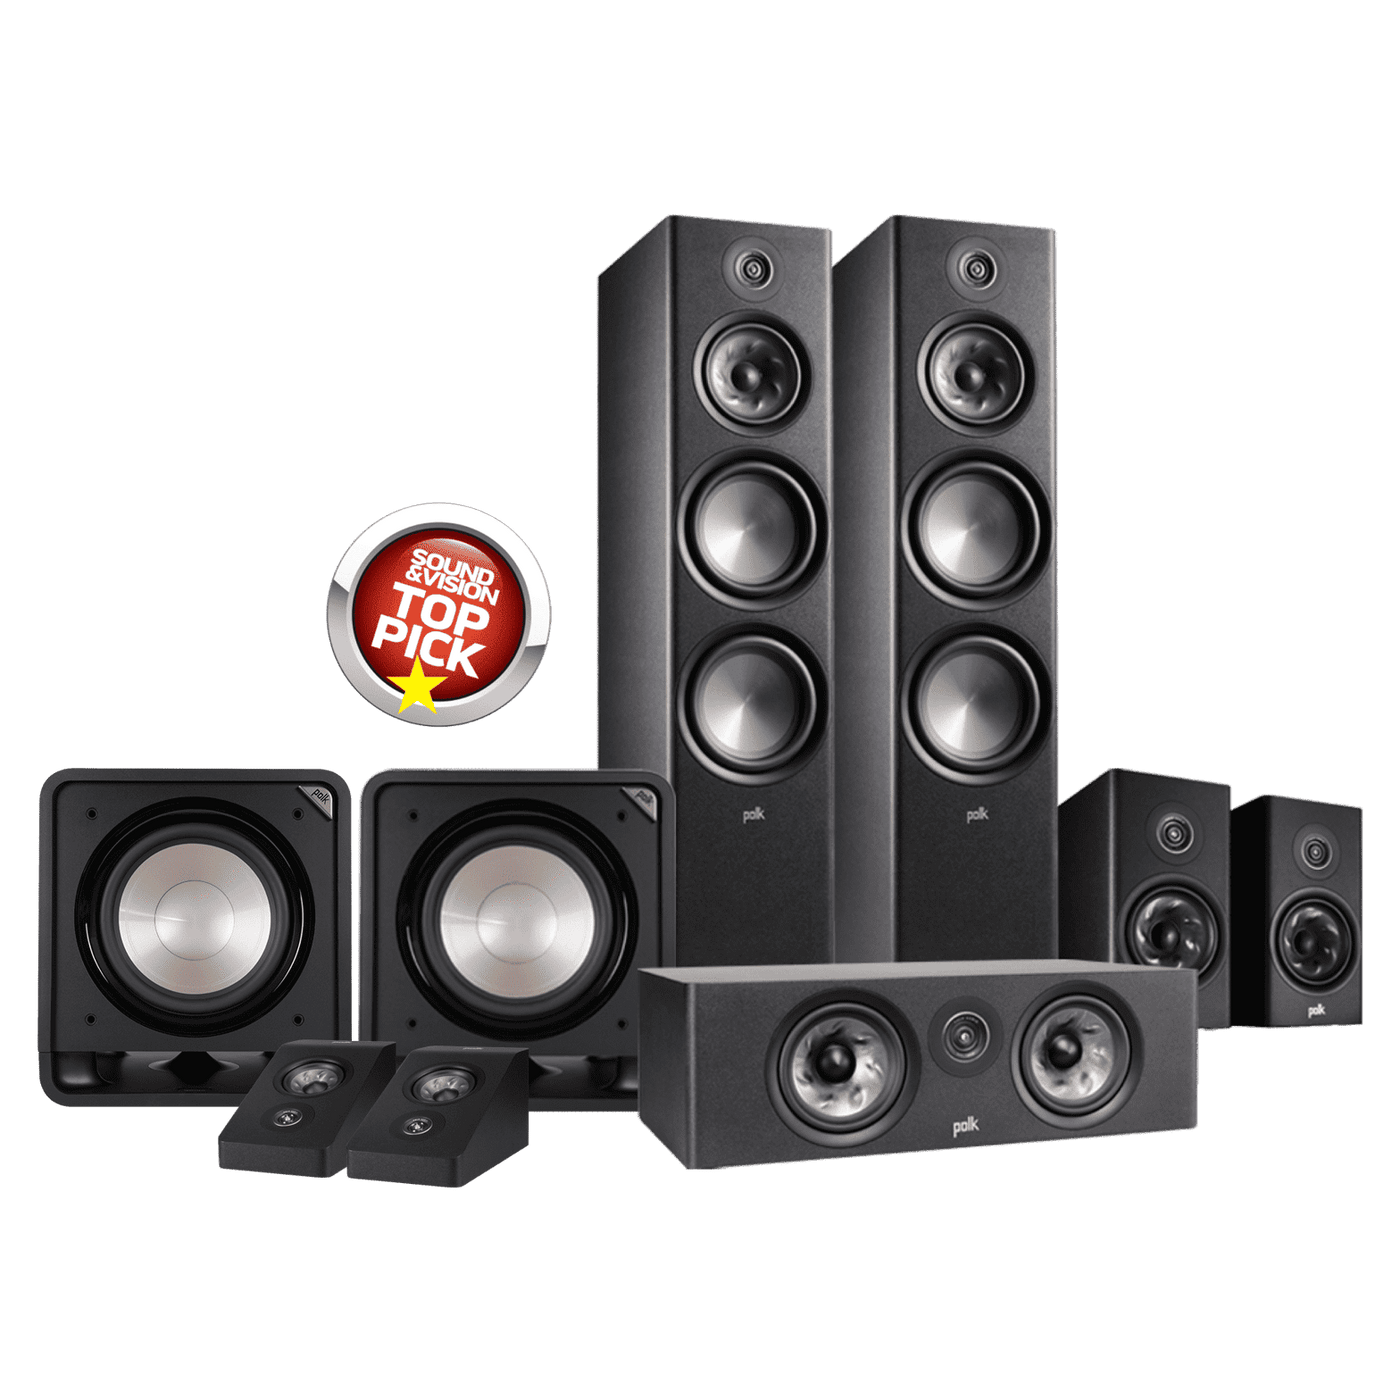 Polk Audio Polk Reserve R700 Dolby Atmos 5.2.2ch Home Theatre Speaker Package Speaker Packages